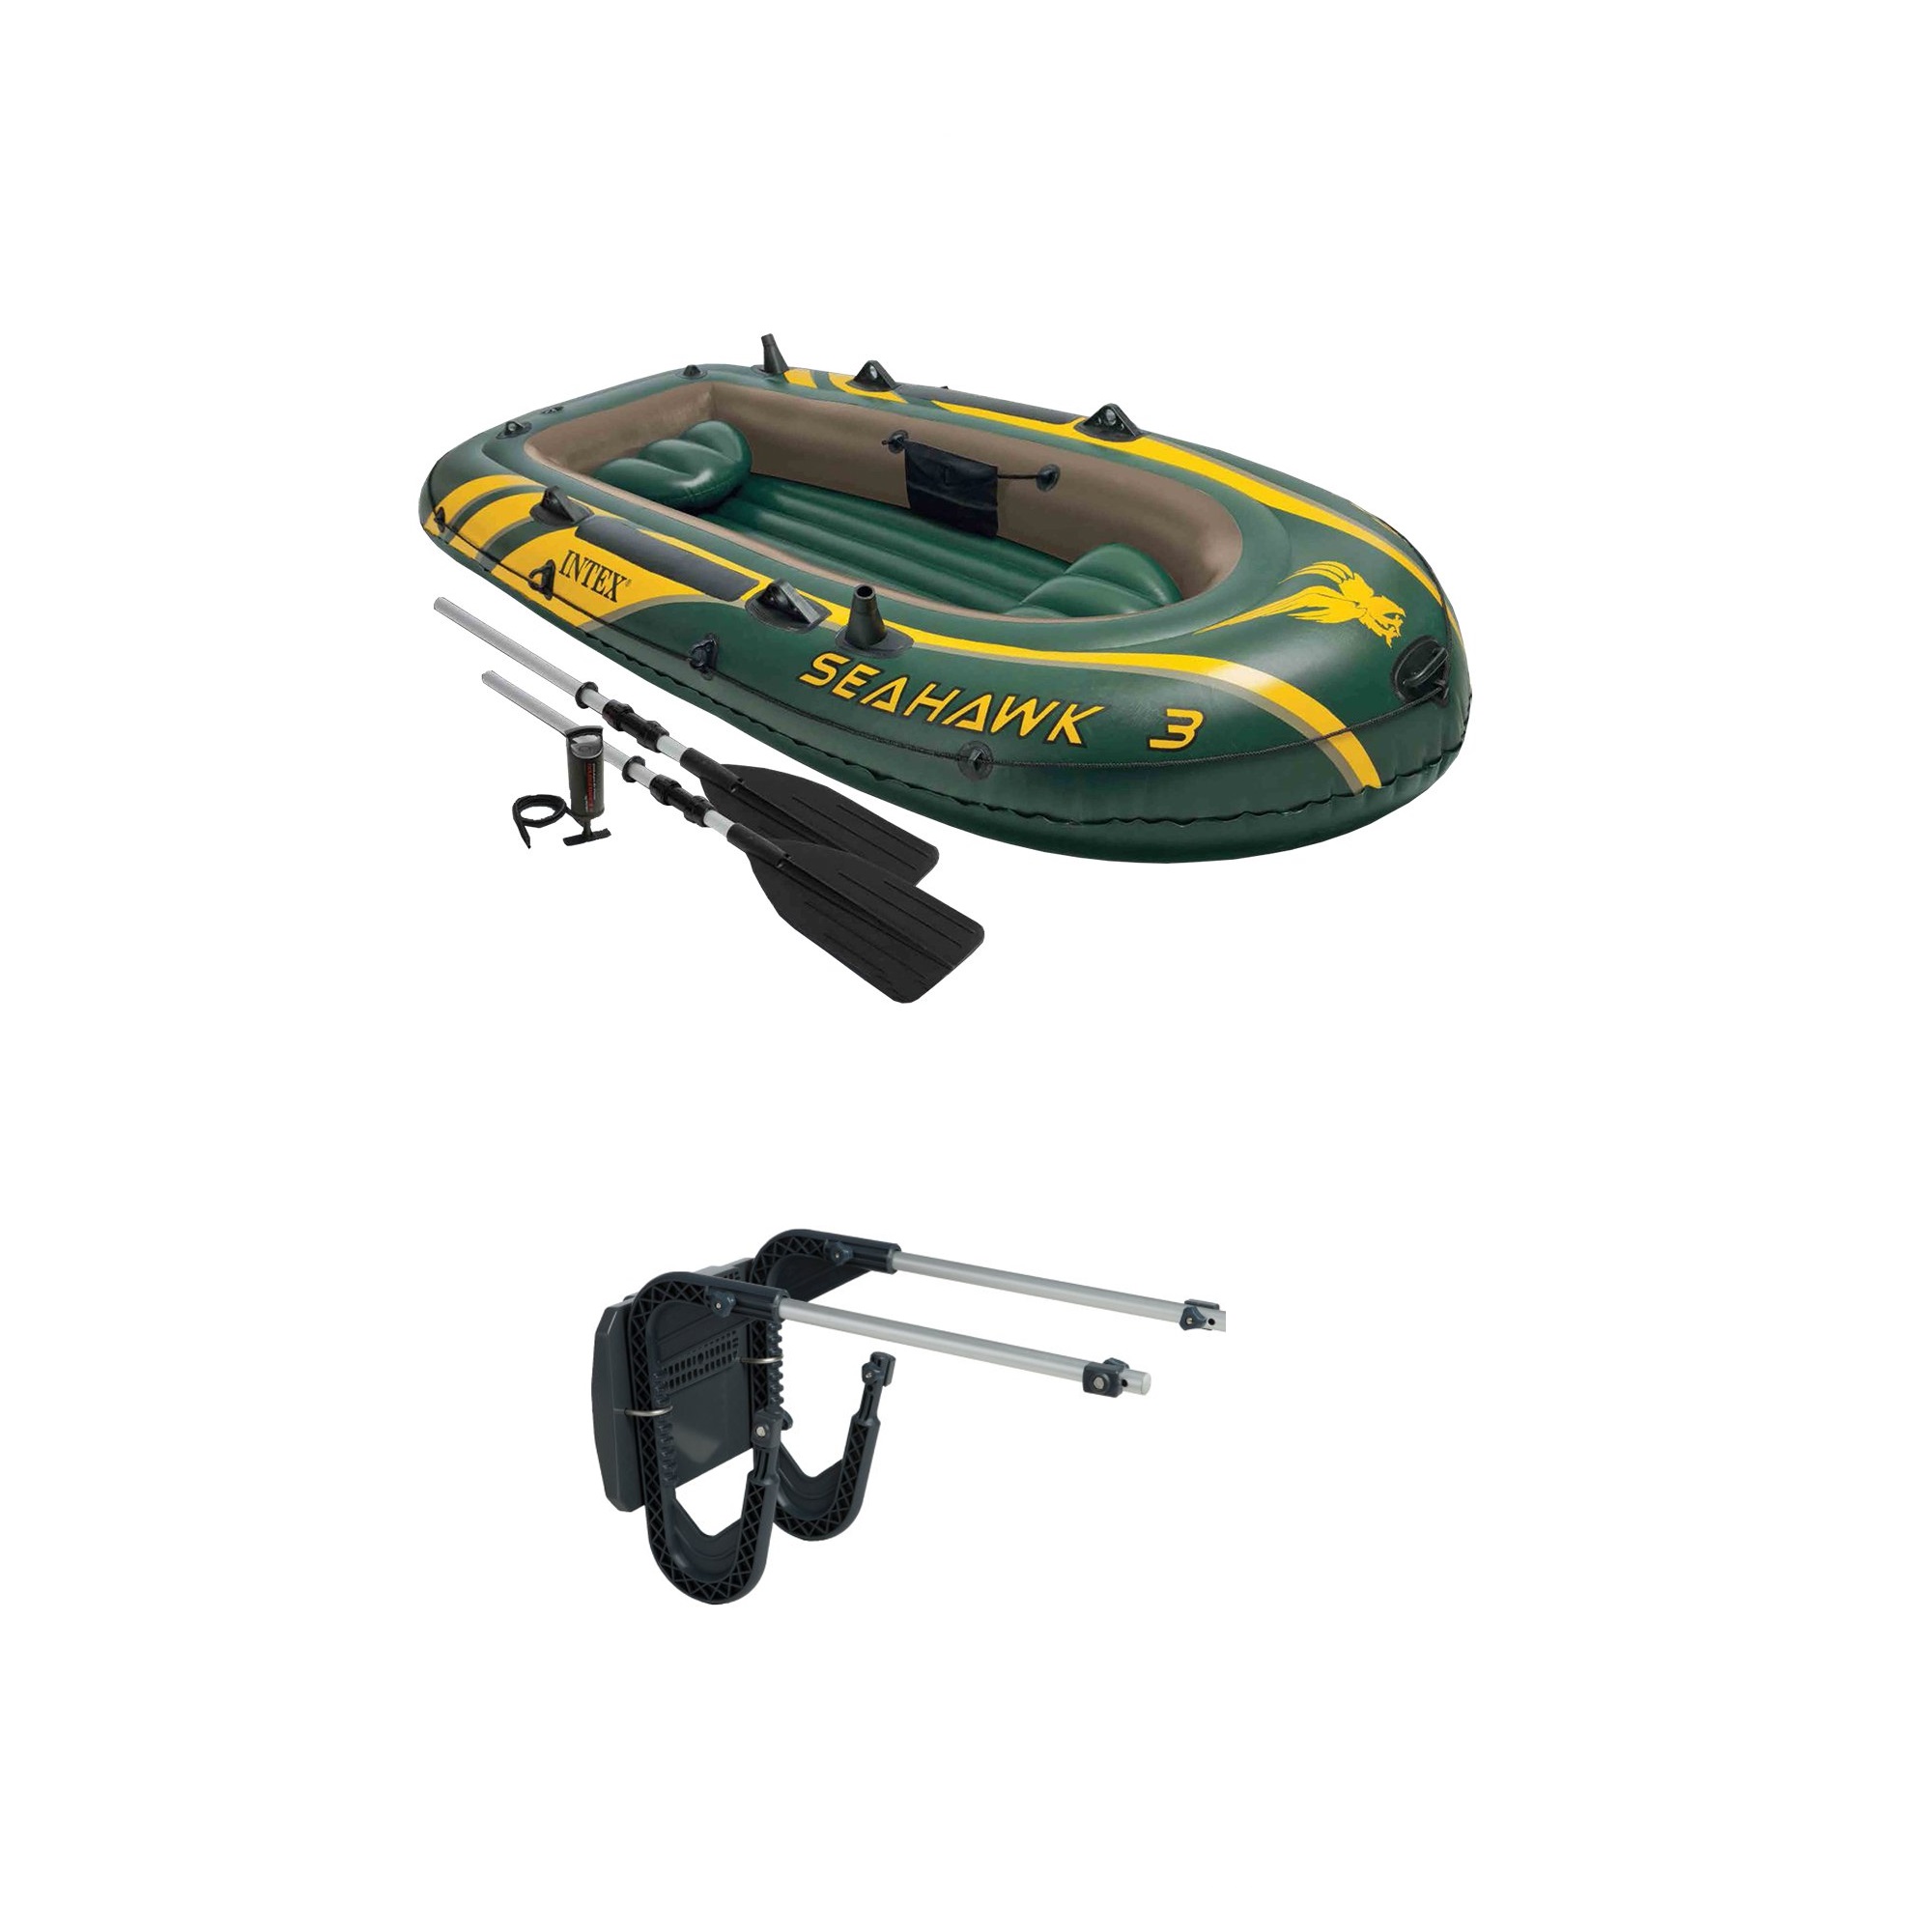 Intex 3 Person Boat Set w/ Aluminum Oars & Pump and Composite Boat Motor Mount - Click1Get2 Black Friday